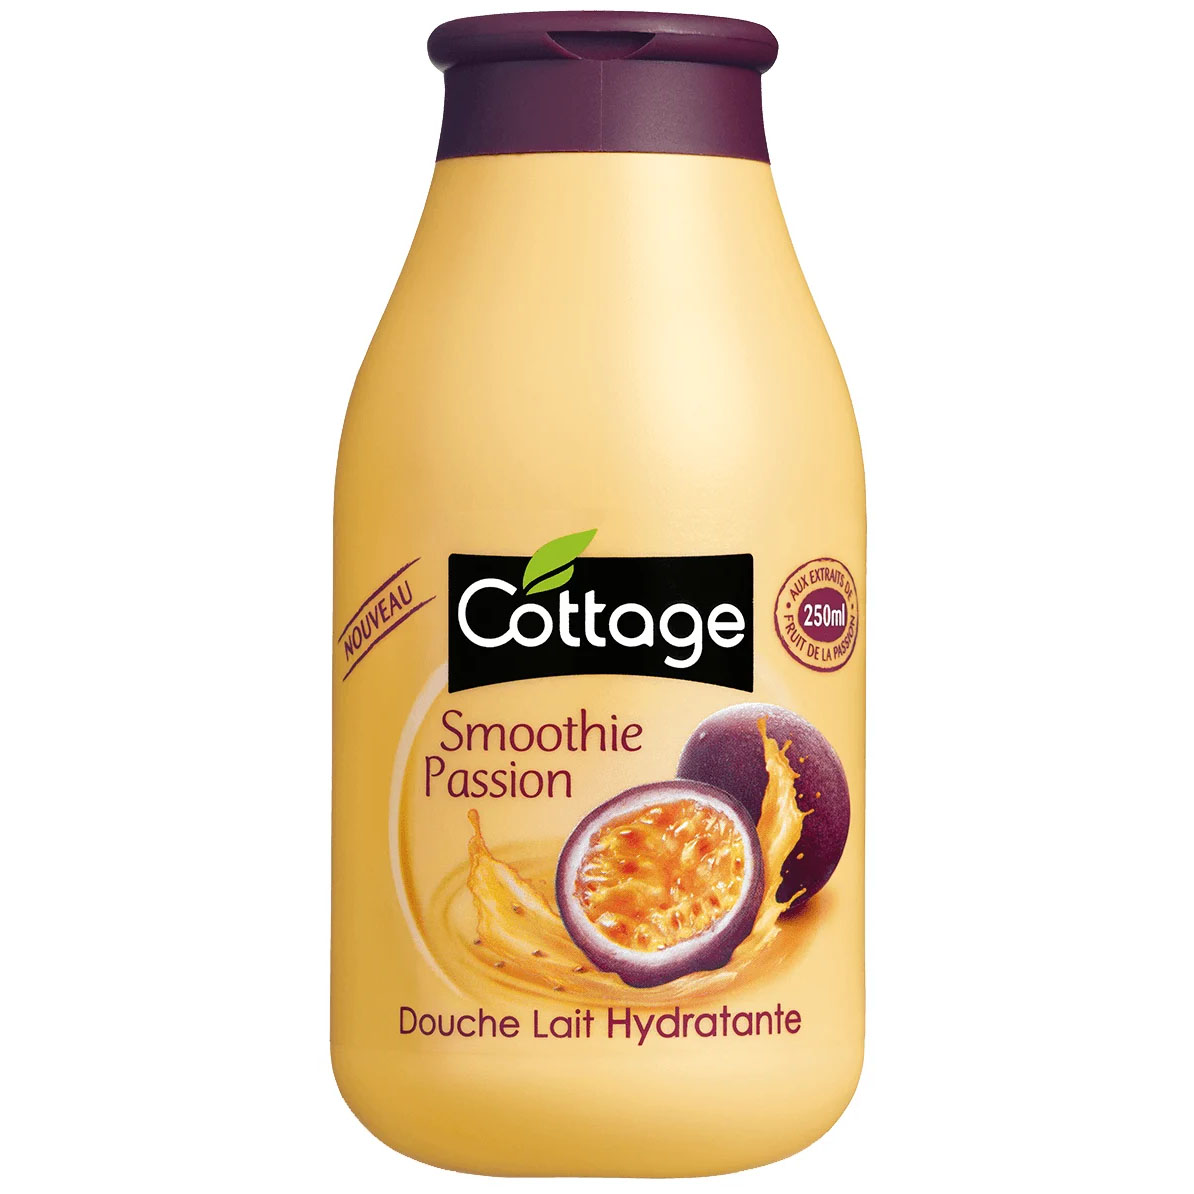 Купить Cottage Moisturizing Shower Gel & Bath Milk Smoothie Passion